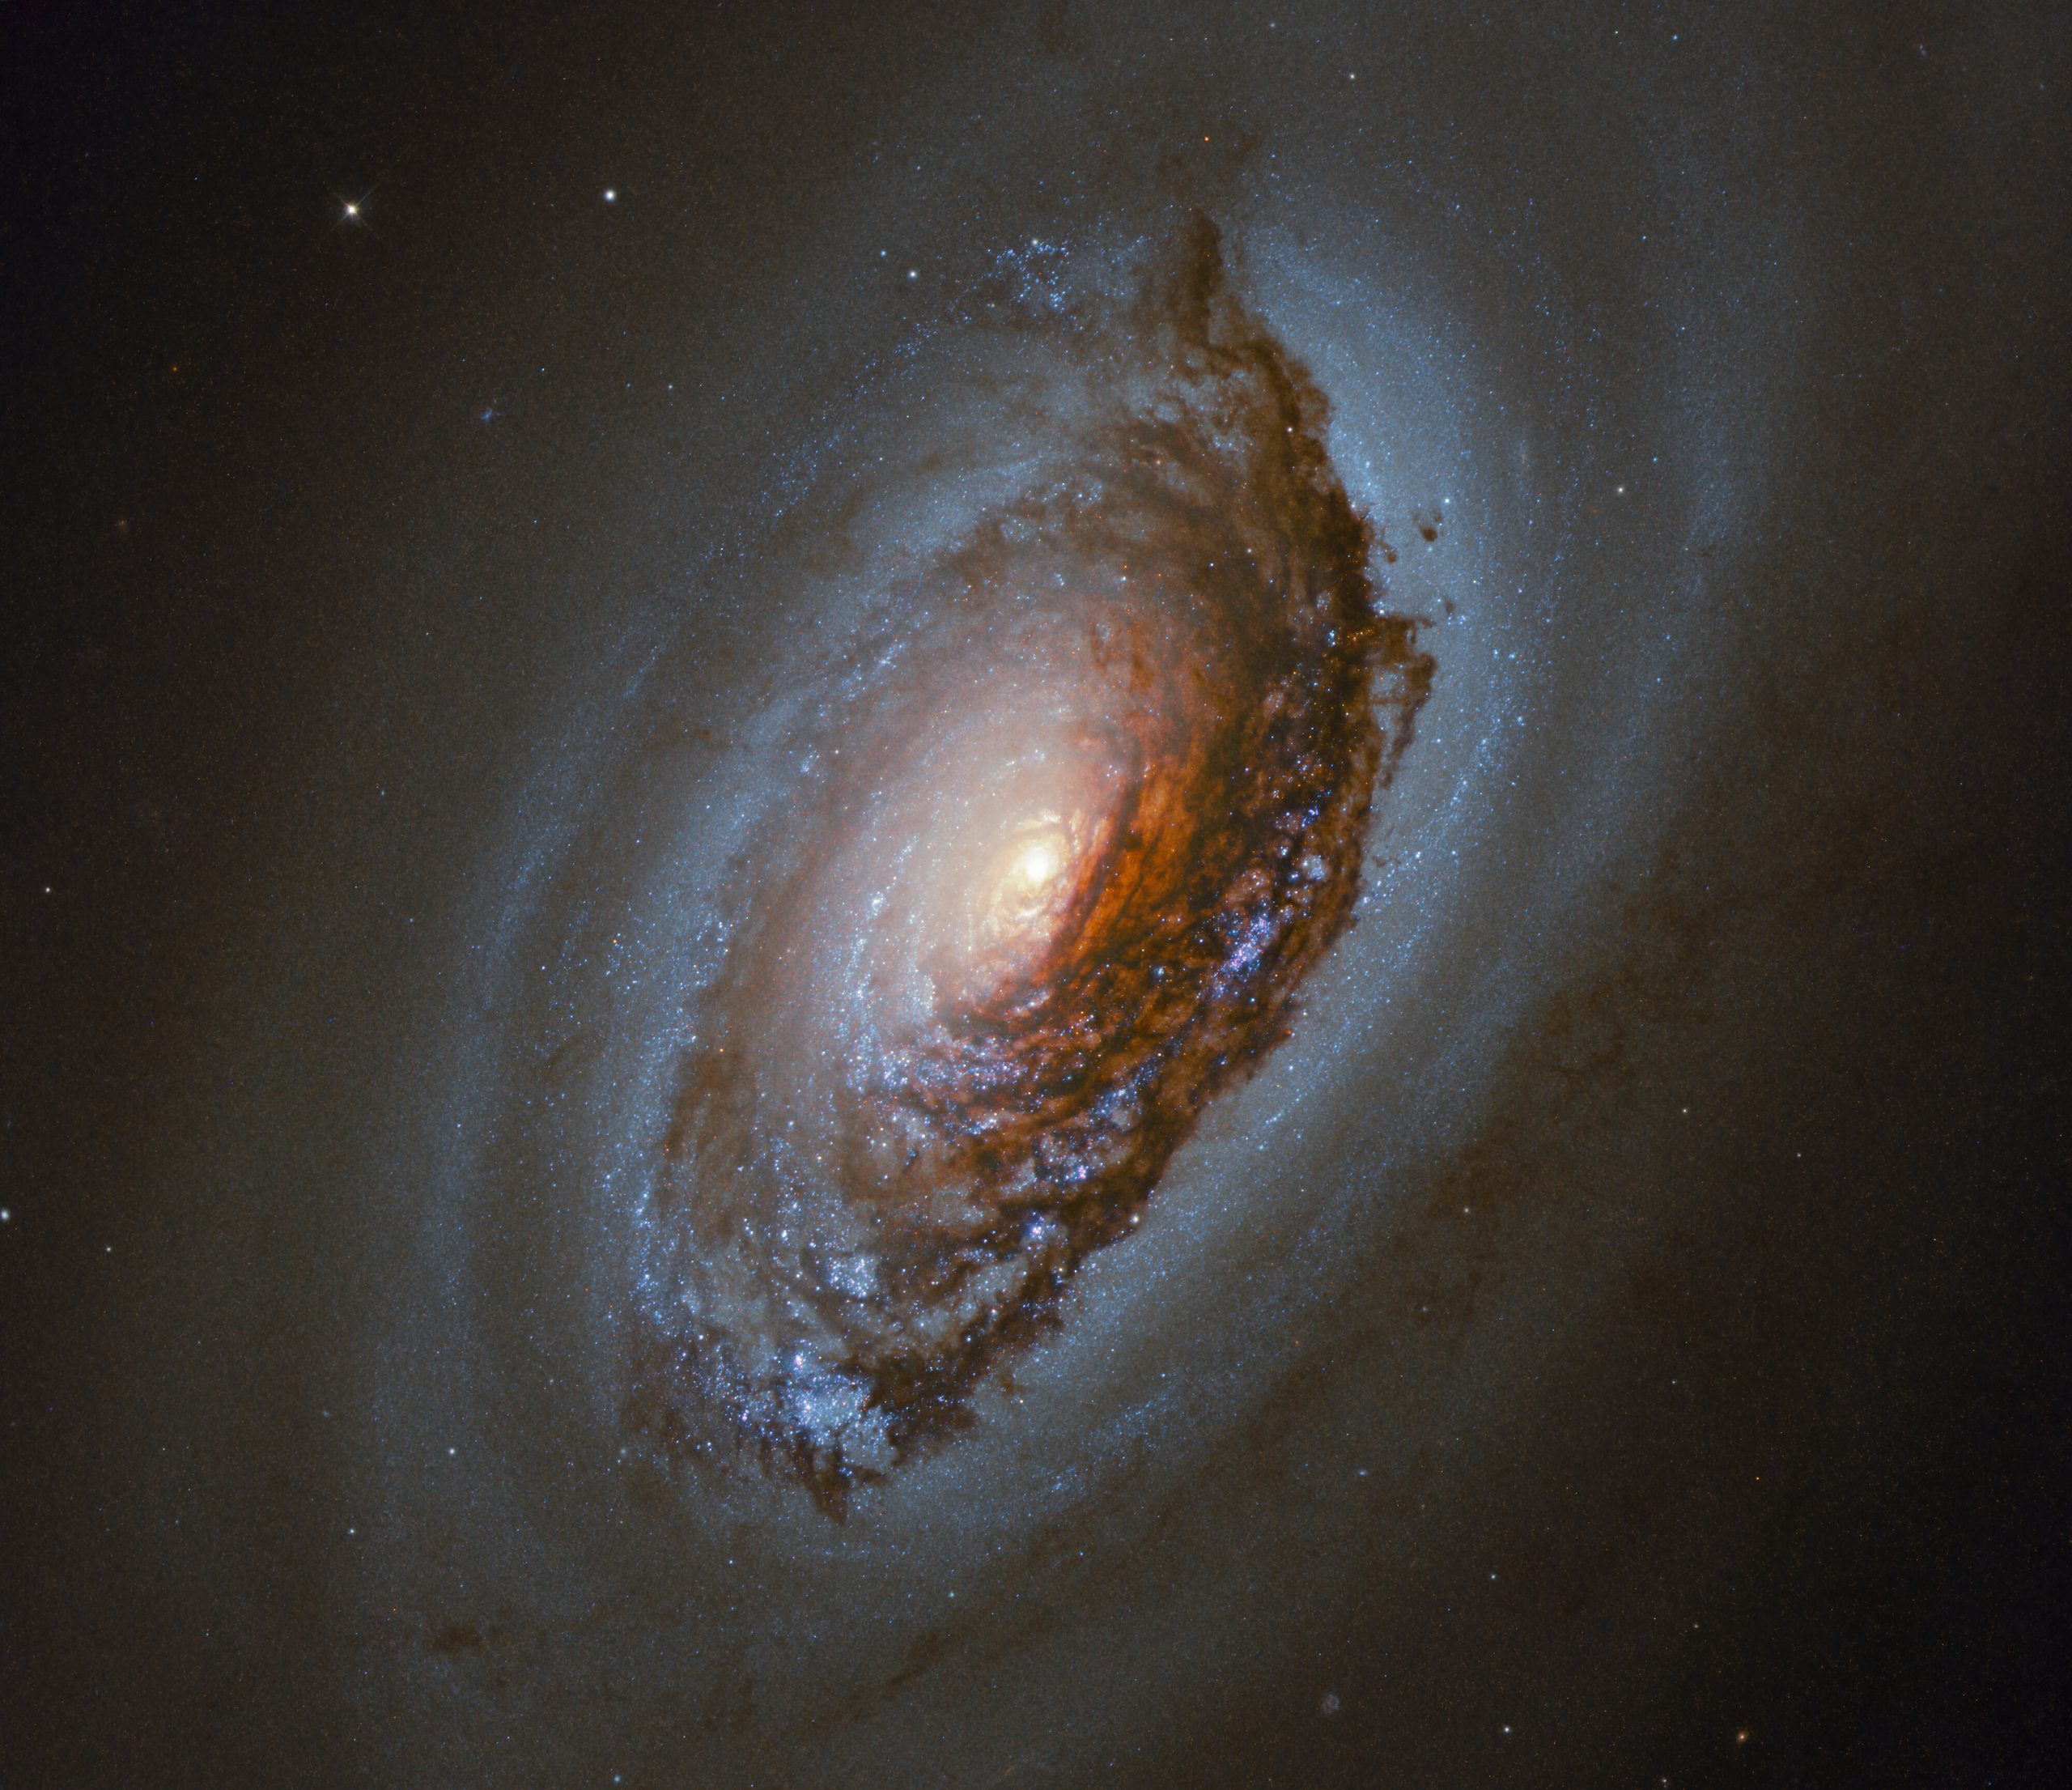 На октябрьском снимке изображена спиральная галактика NGC4826, которая расположена в 17 миллионах световых лет от Земли. Предоставлено: ЕКА / Хаббл и НАСА, Дж. Ли и группа PHANGS-HST.